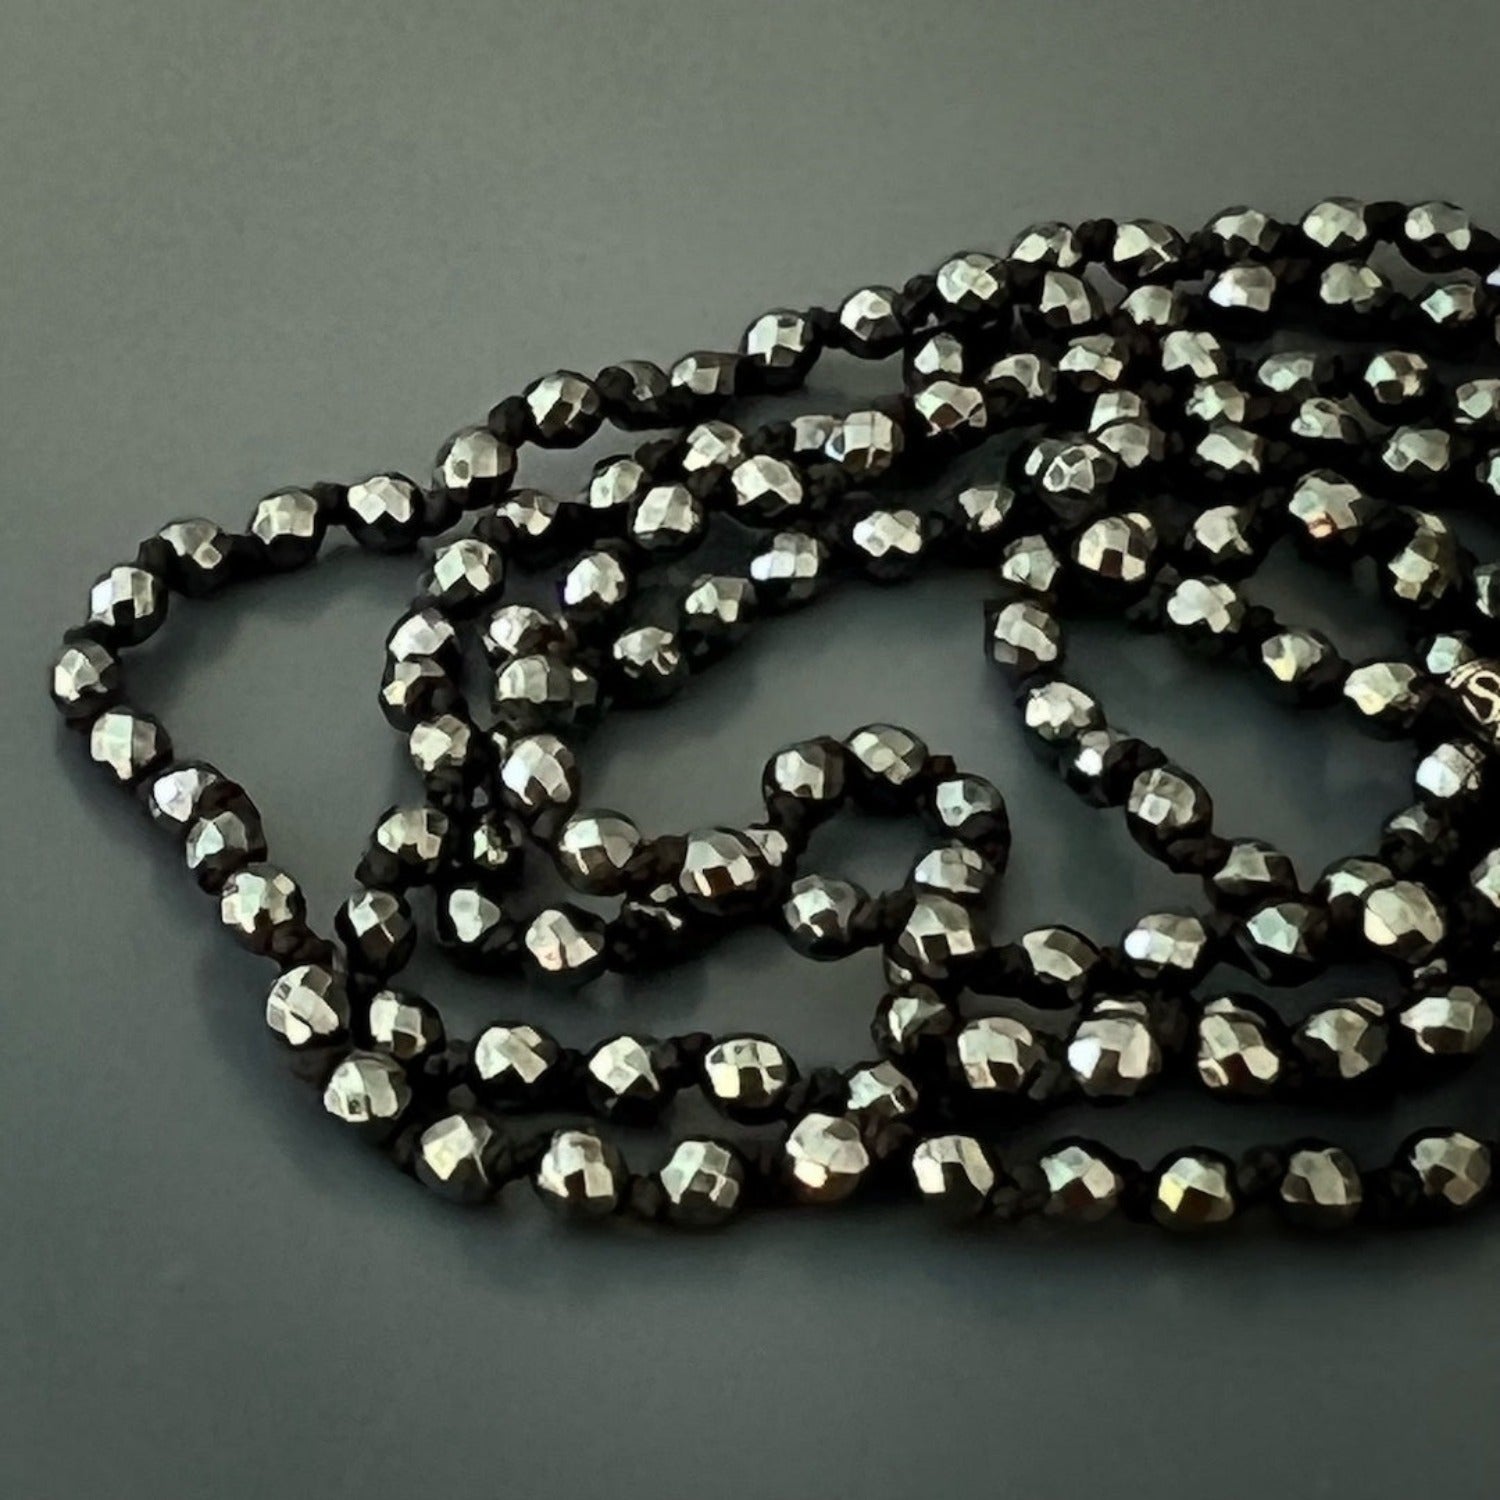 Sleek and Modern - Natural Hematite Stone Beads.